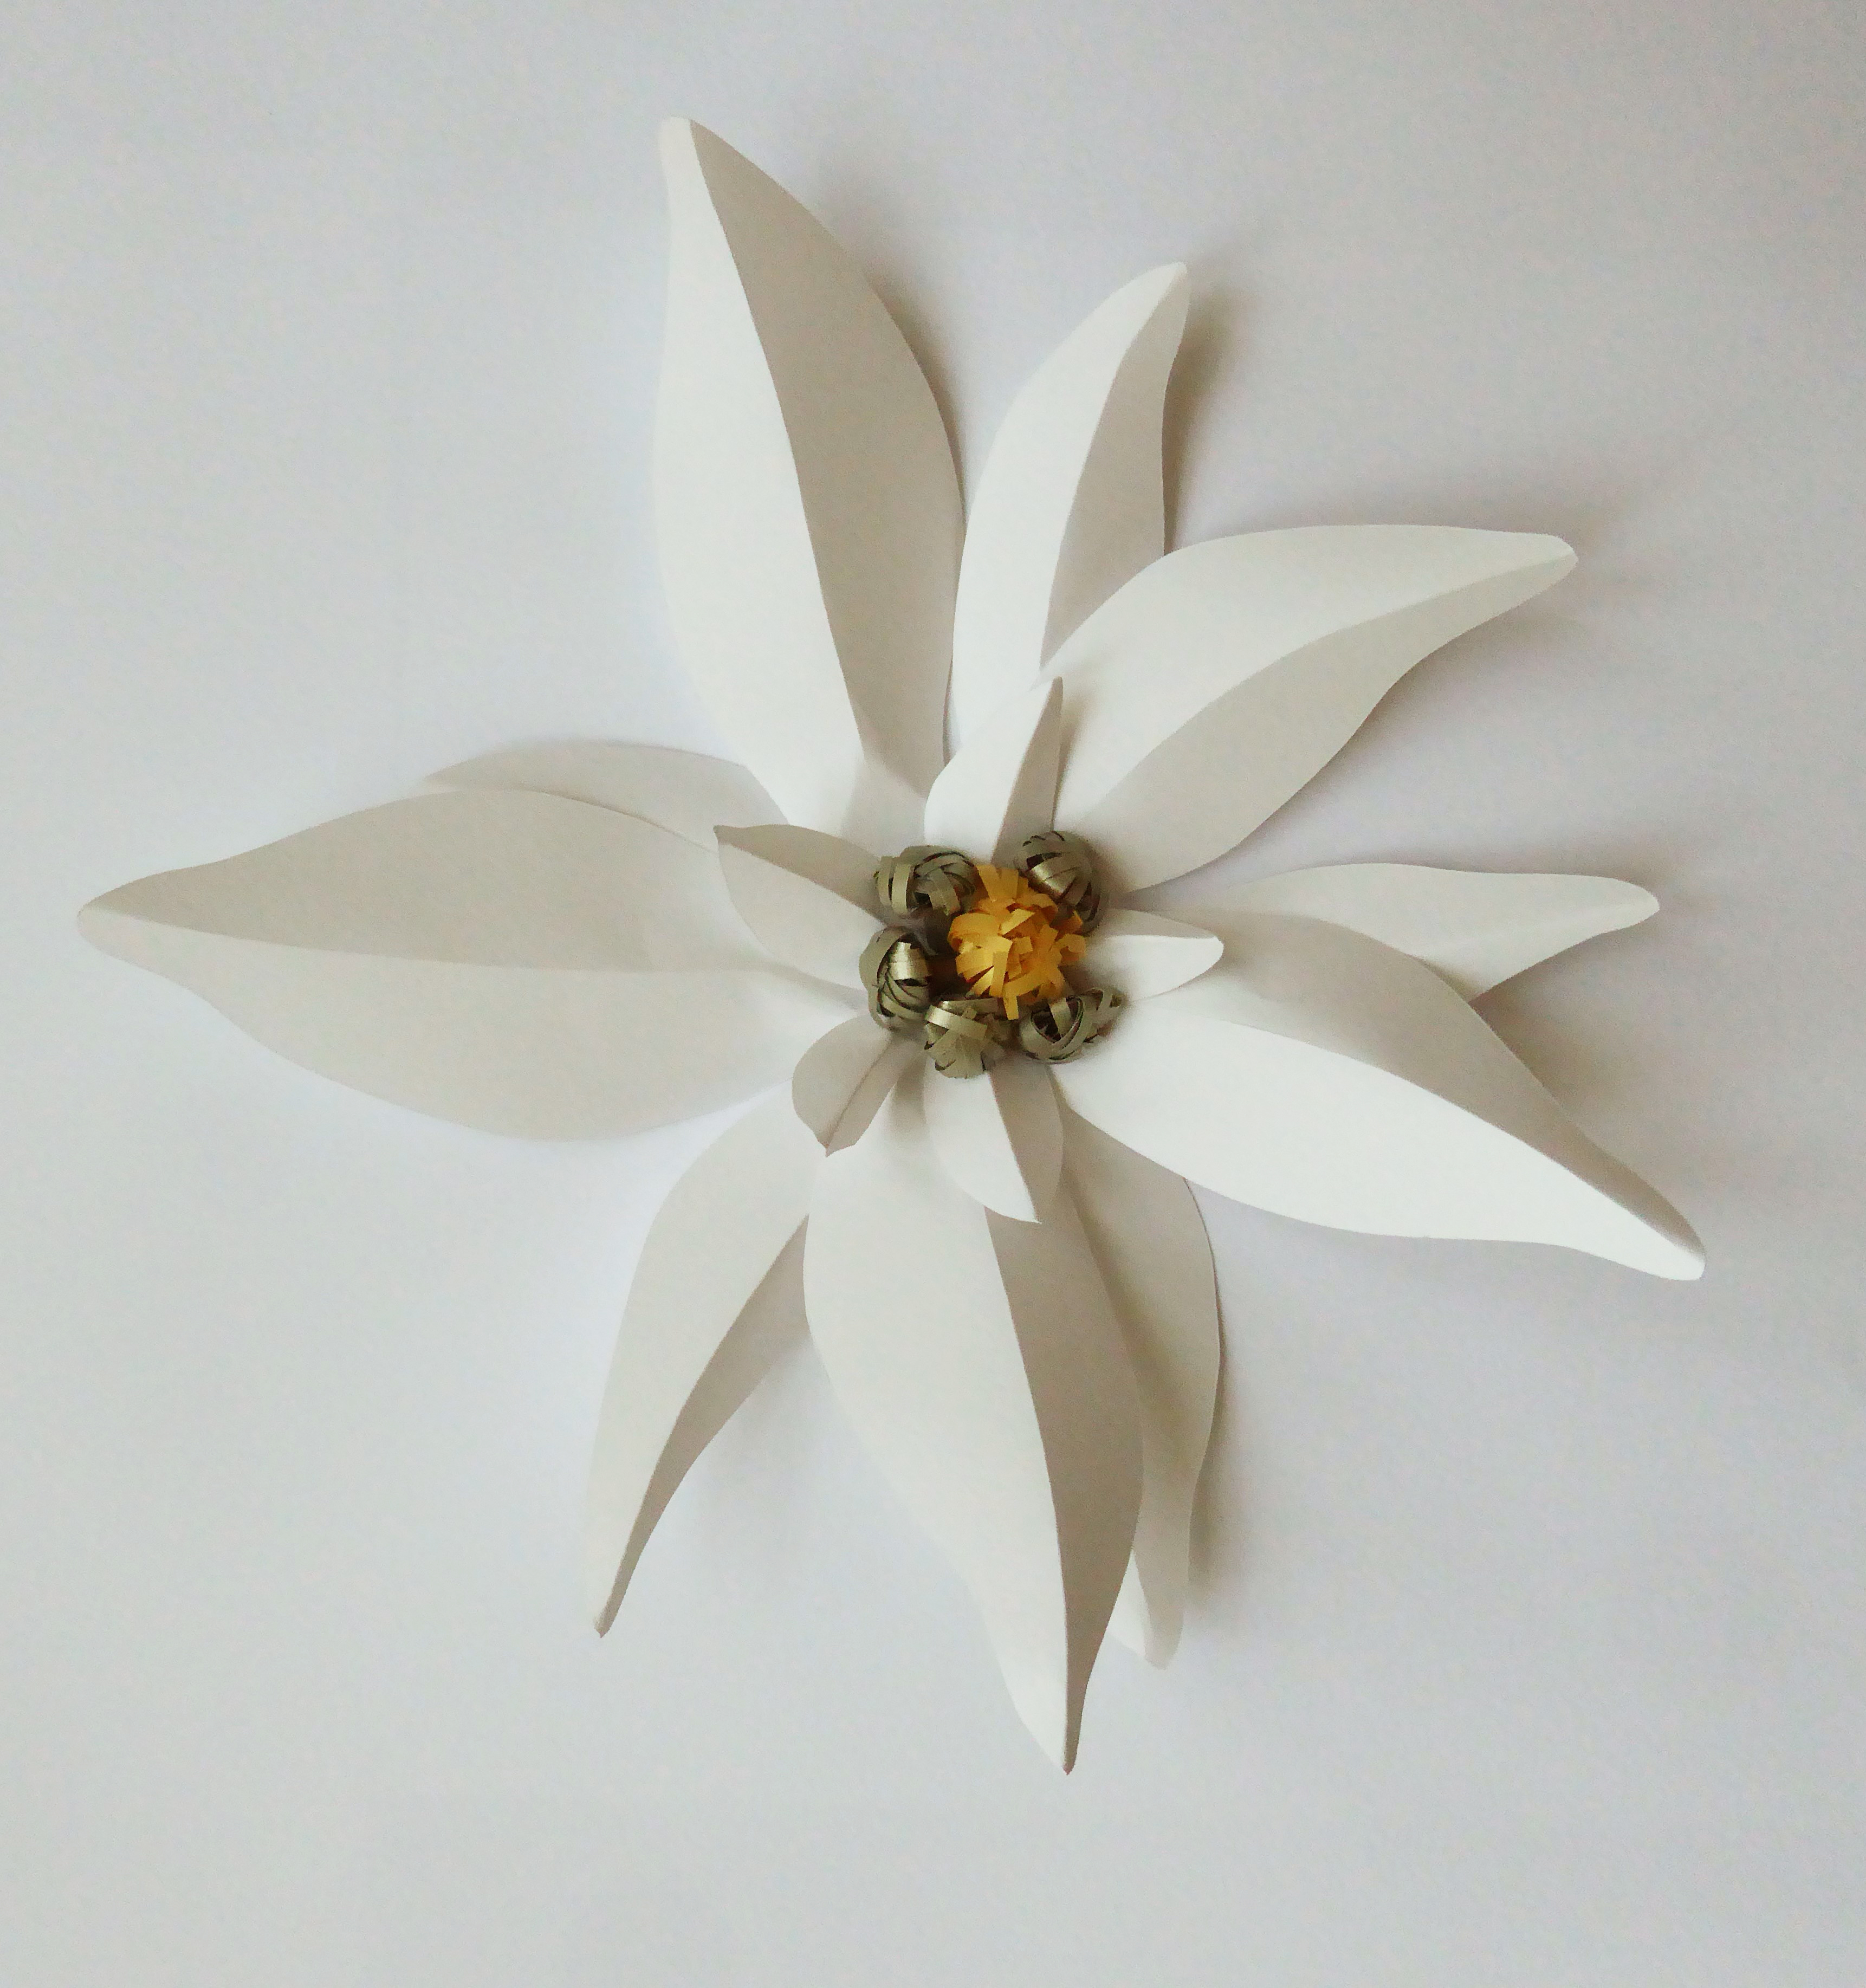 Edelweiss flower paper art, technique  volume 3D, étude pour Helena Rubinstein, Laure Devenelle